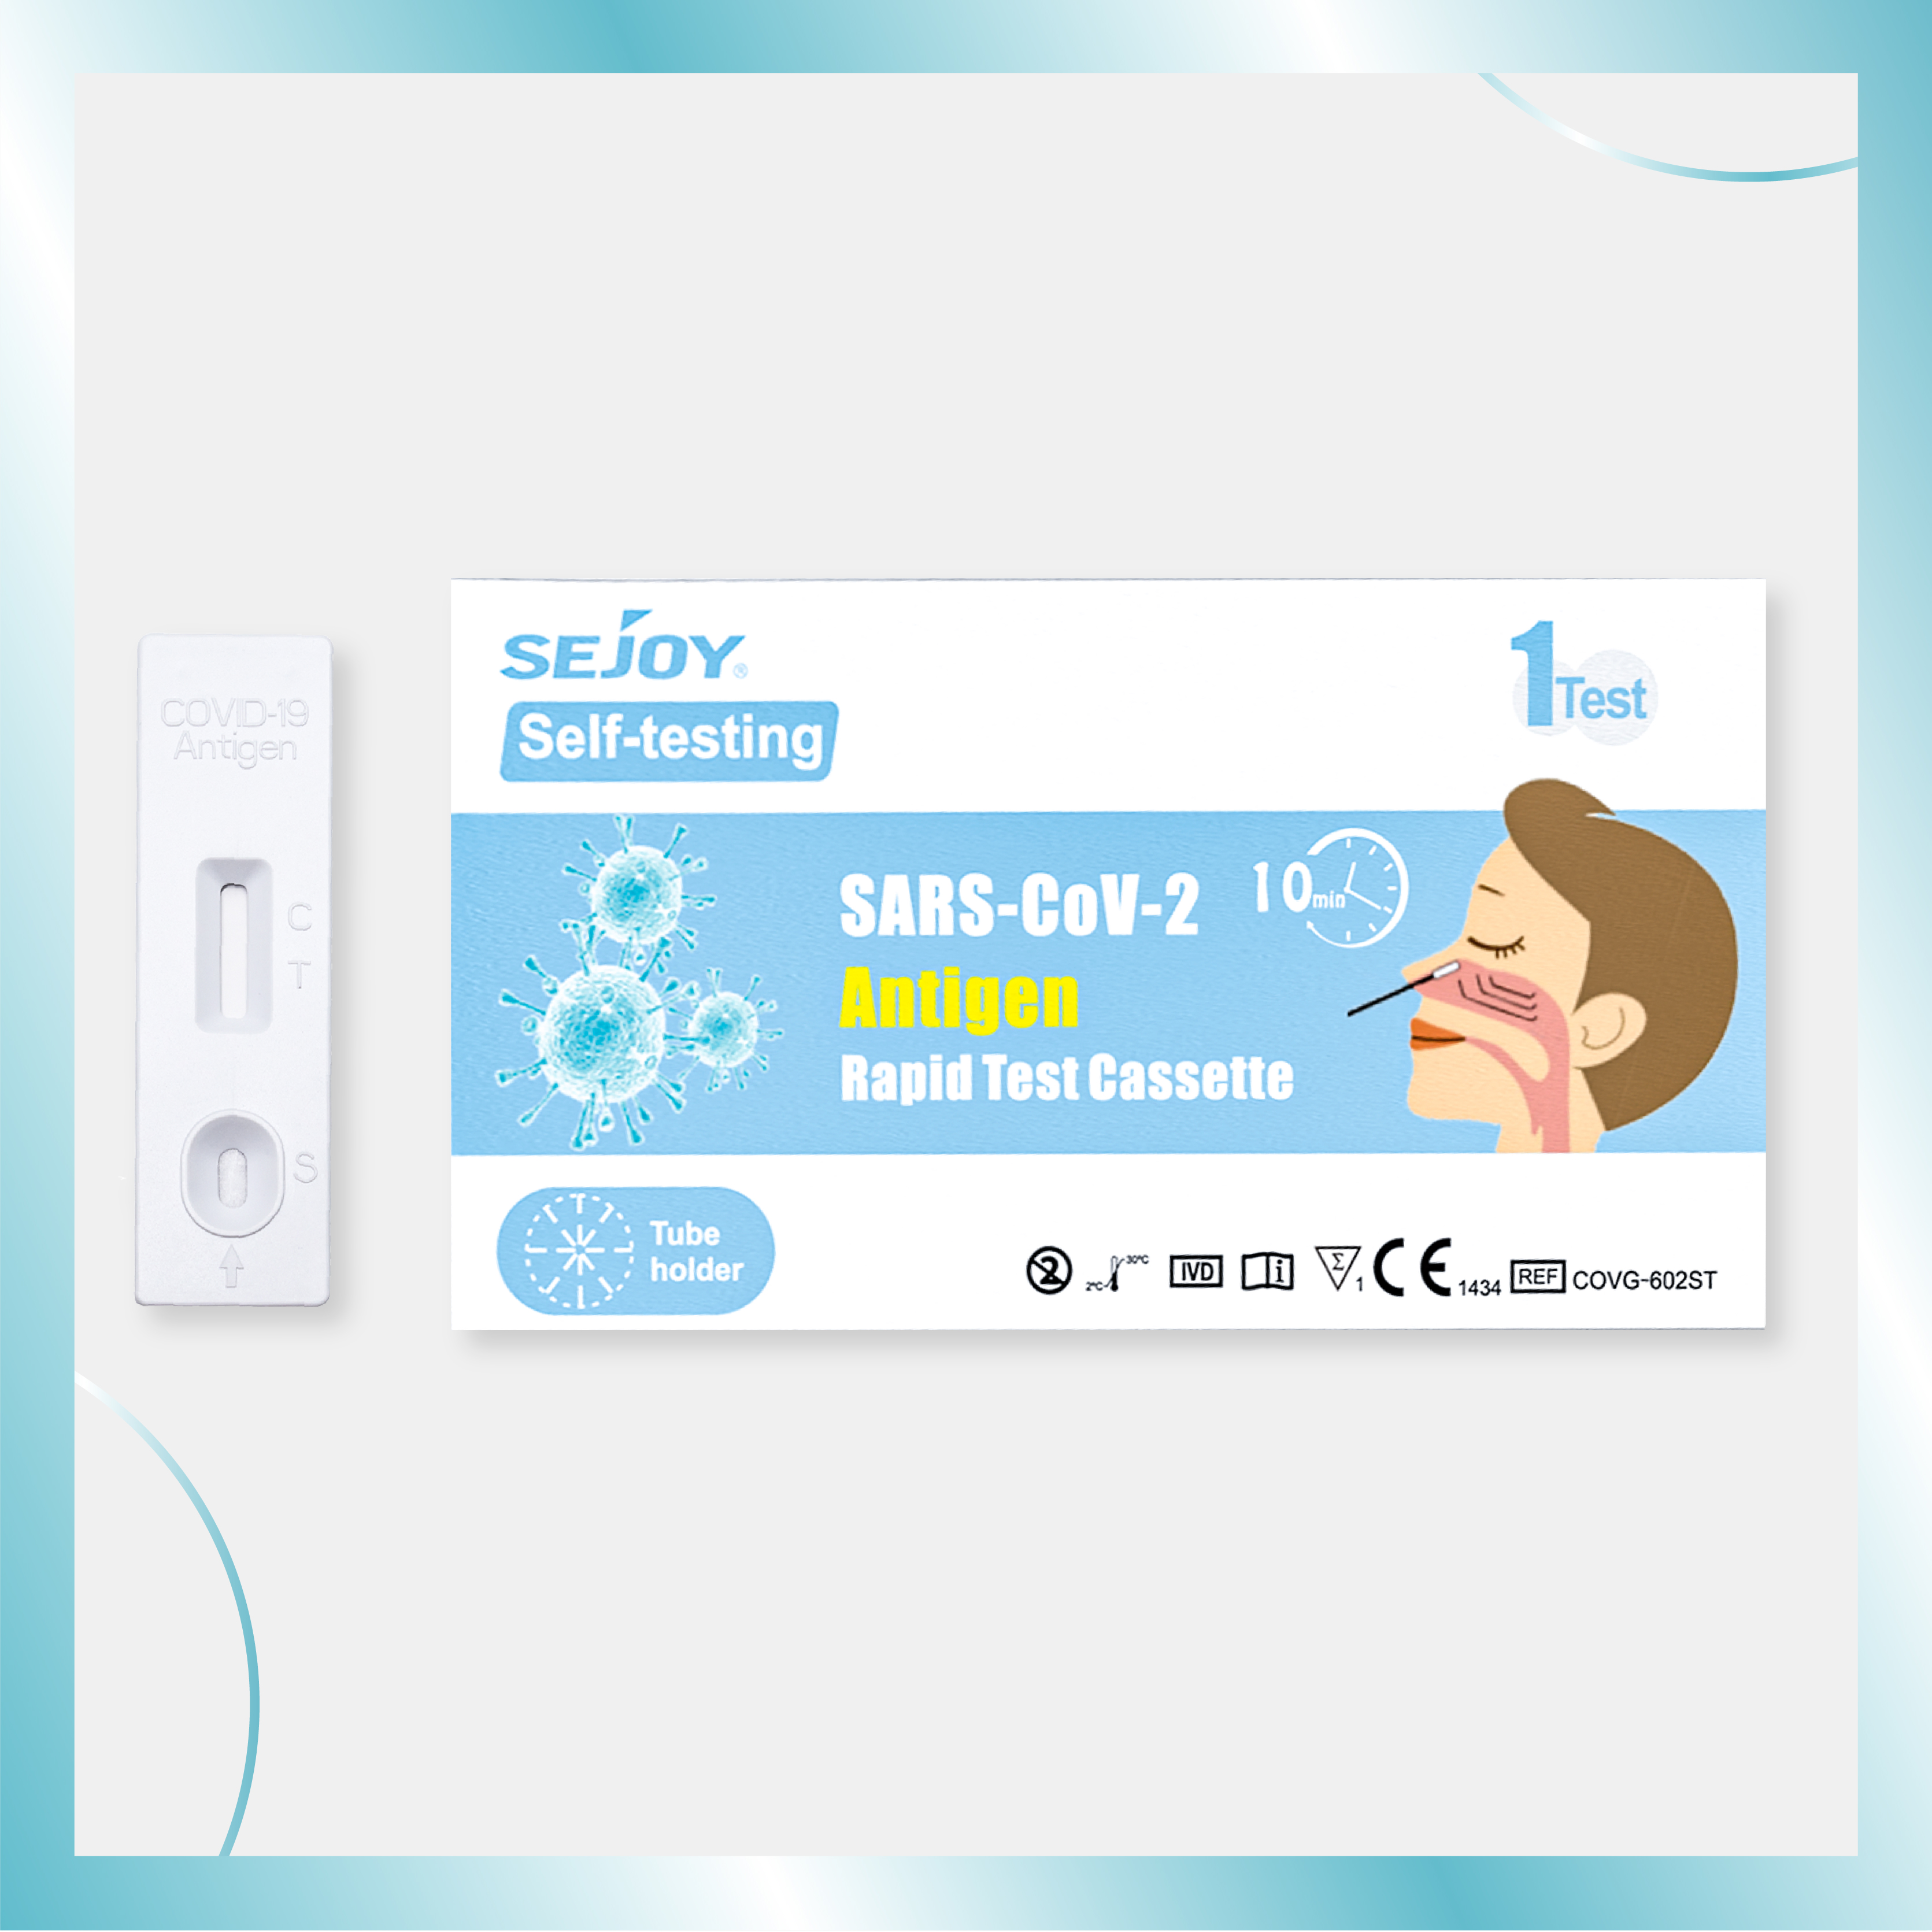 SARS-CoV-2 Antigen Rapid Test Cassette ສໍາລັບການທົດສອບຕົນເອງ (OTC CE1434)